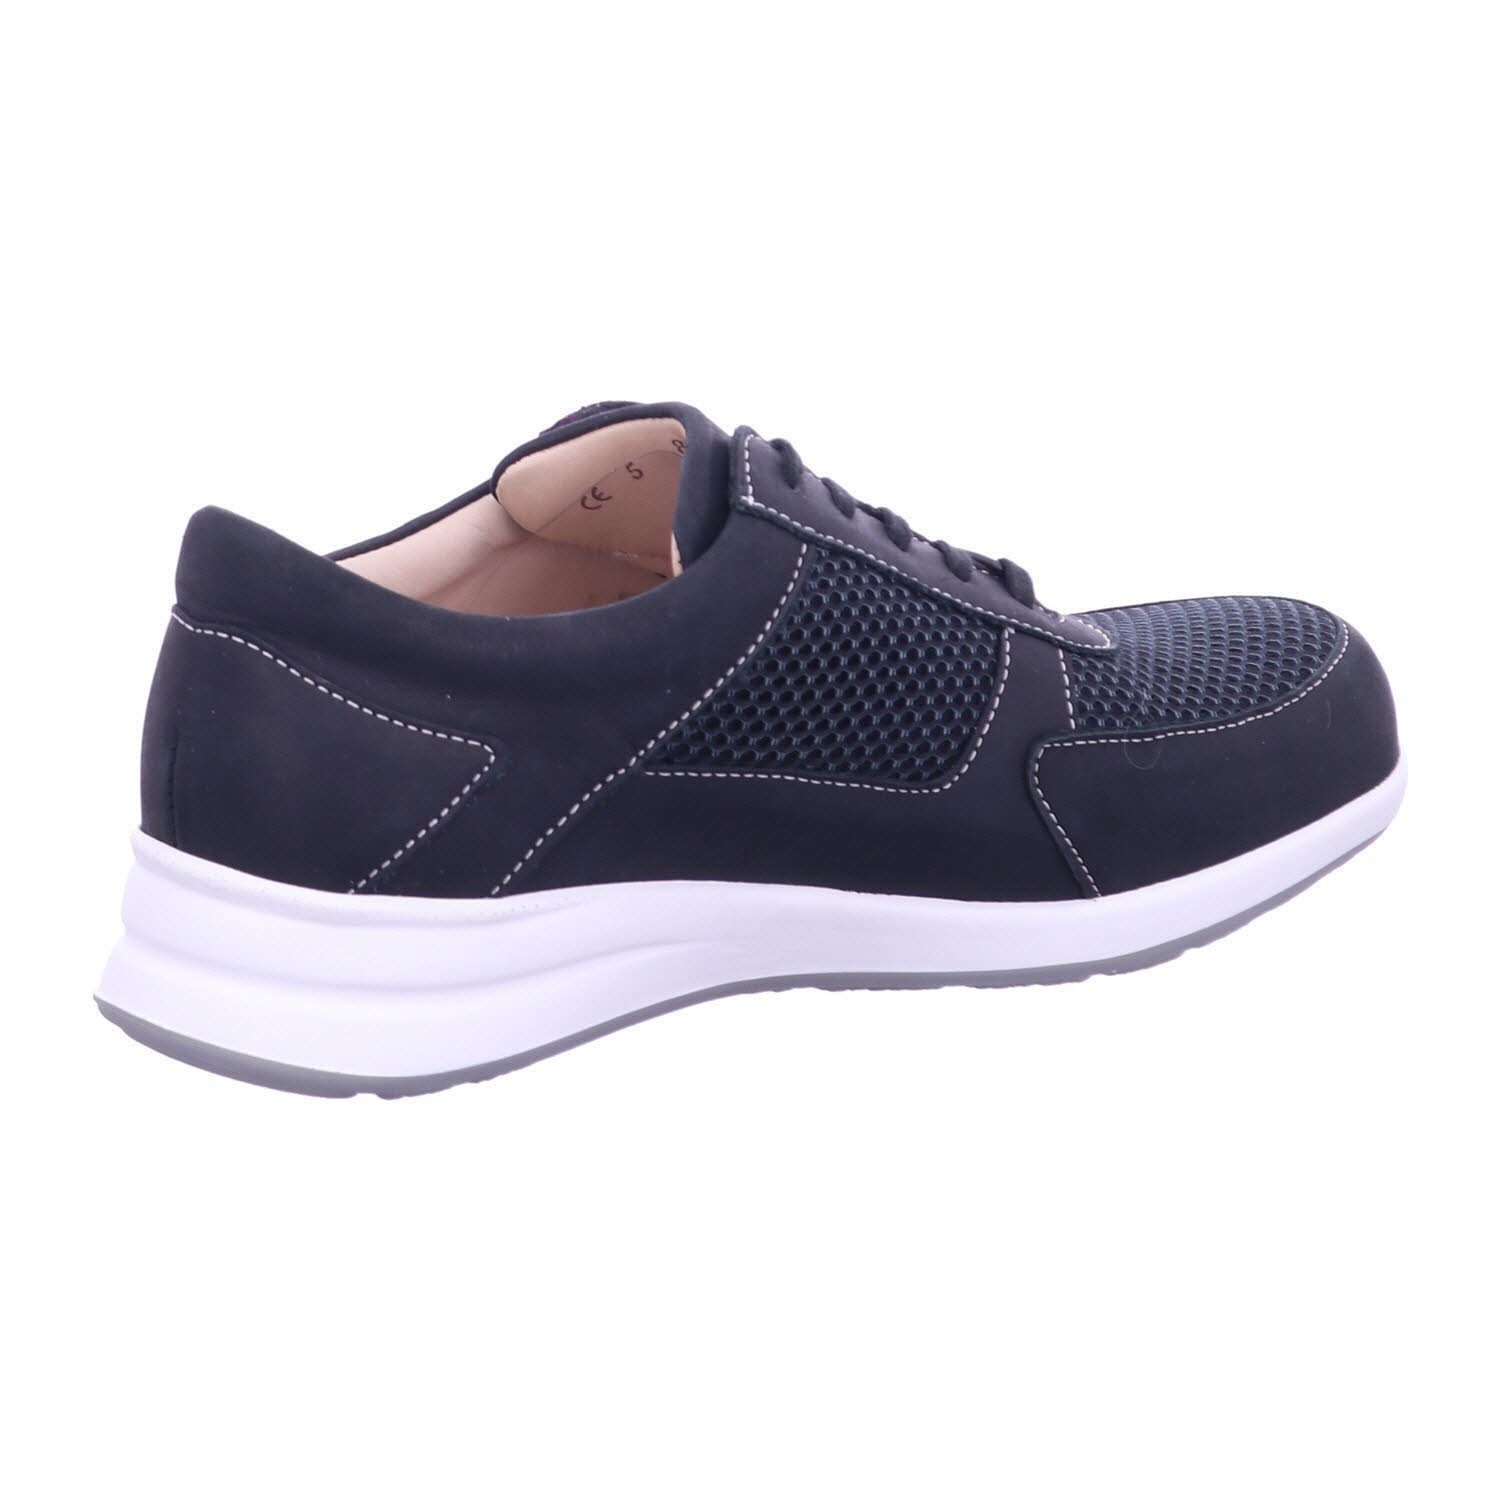 black/anthracite Sneaker Comfort Finn